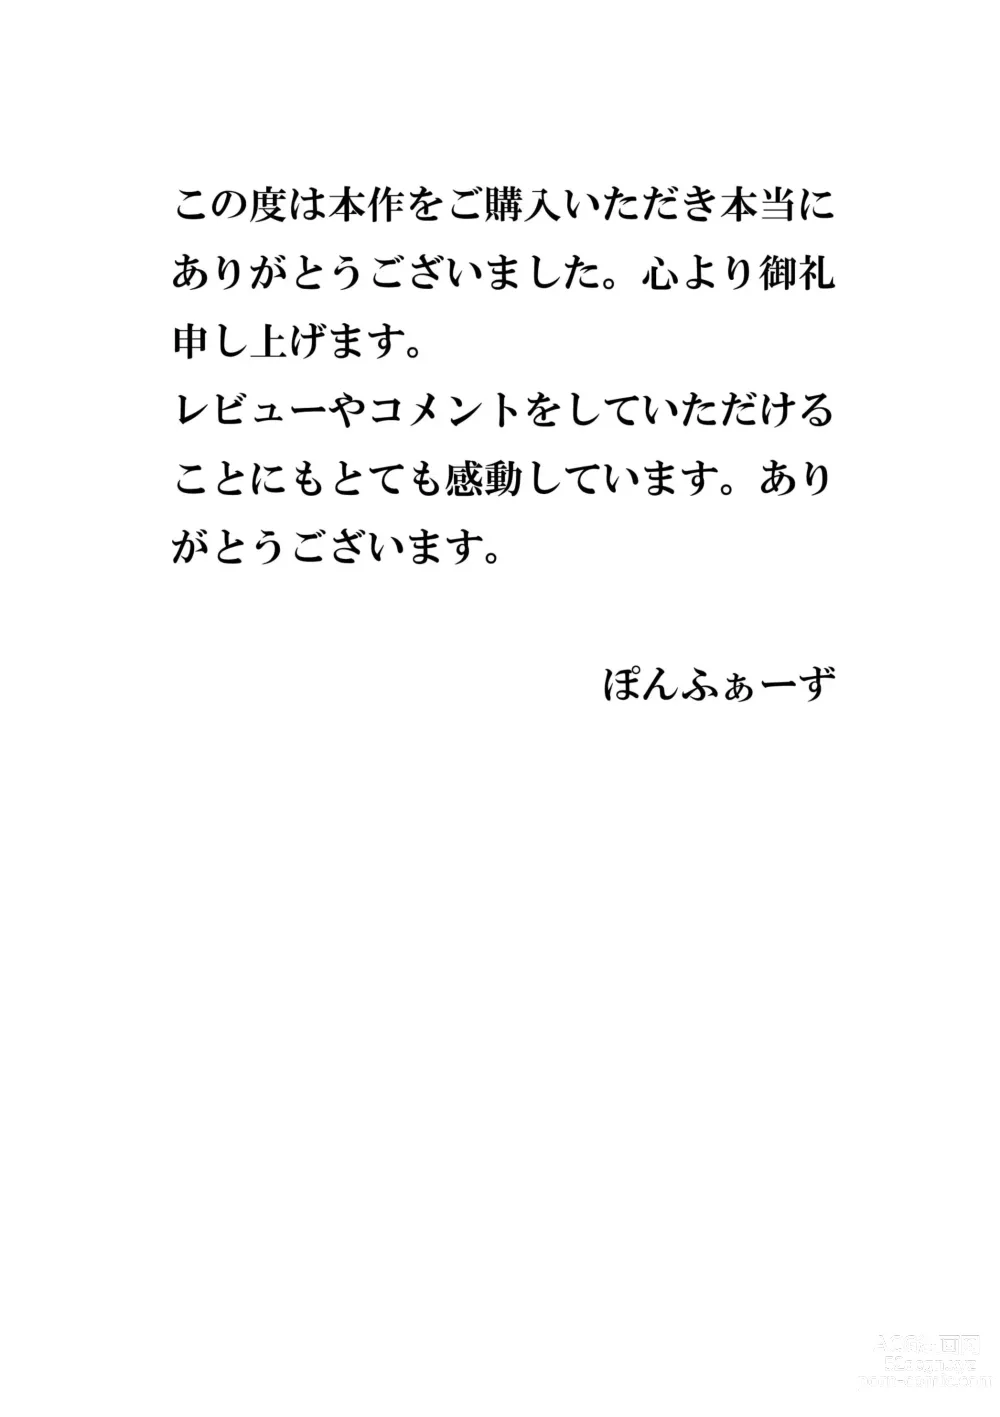 Page 39 of doujinshi Ano Nitsu no koto